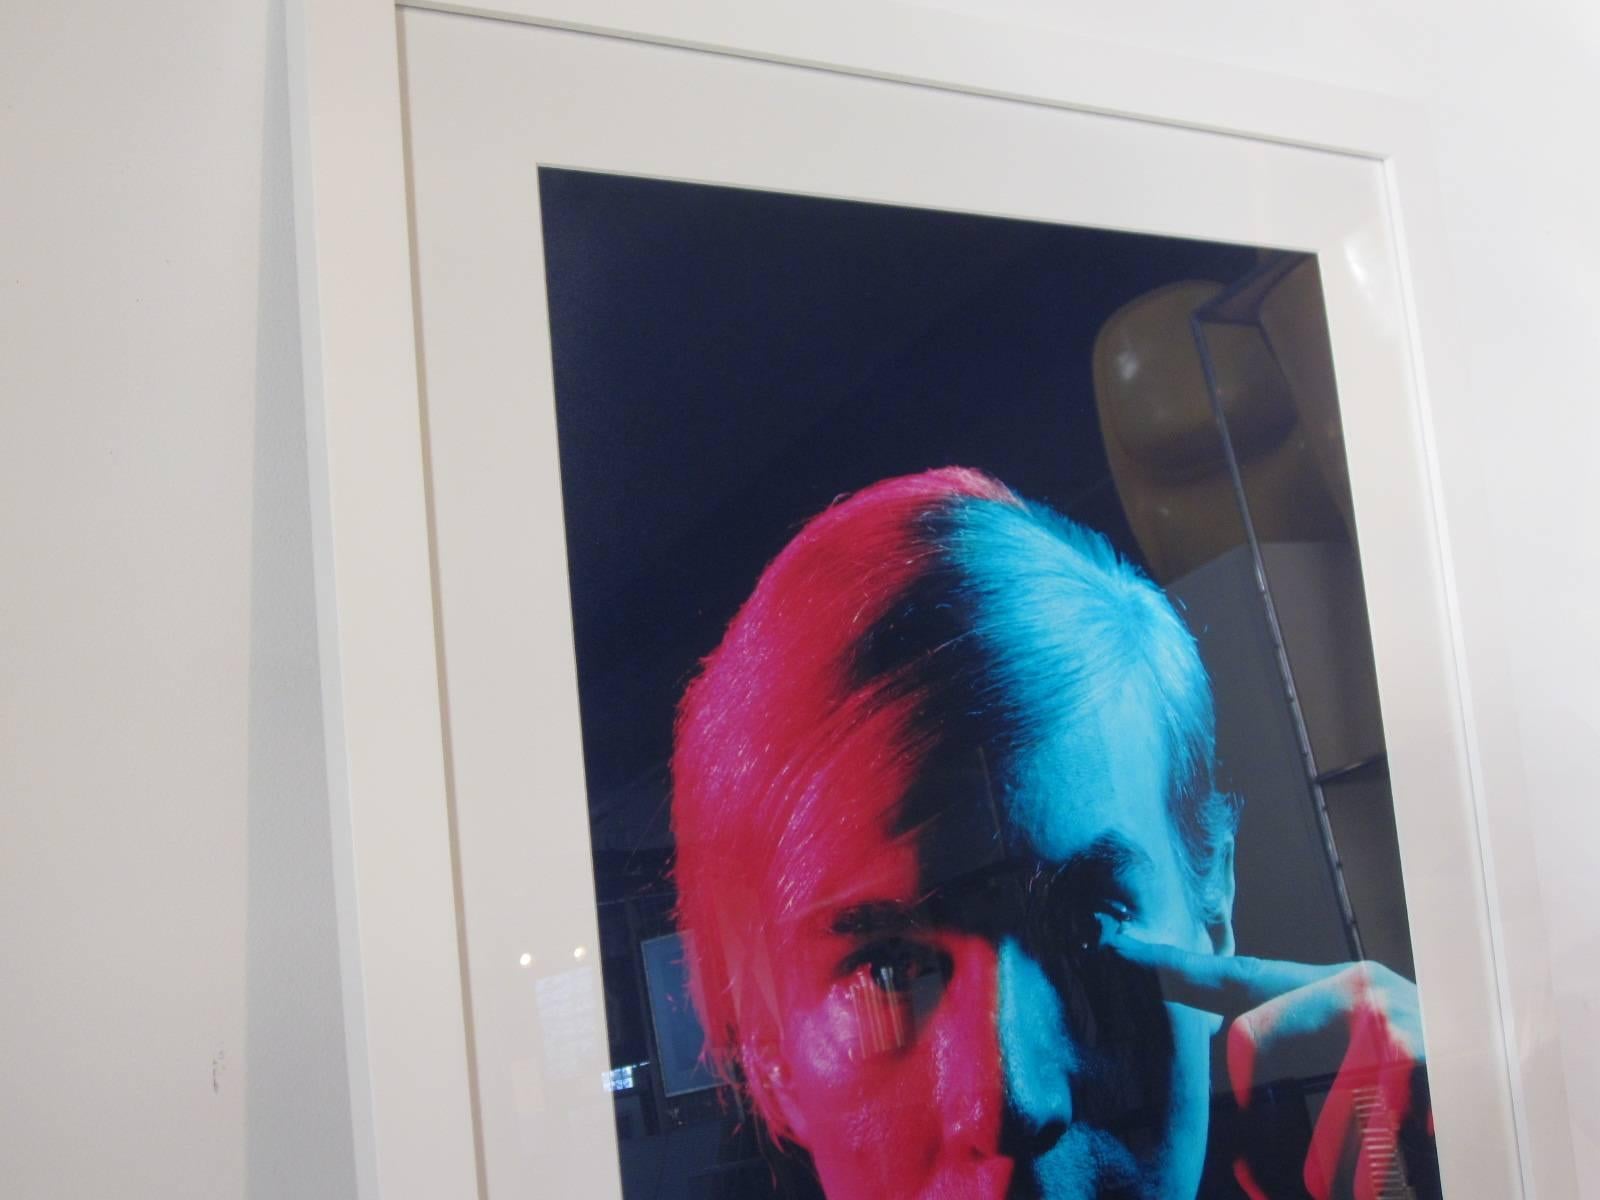 Portrait d'Andy Warhol réalisé en 1968 par le maître photographe et imprimeur Philippe Halsman (1906-1979). En 1989, une édition de 100 portefeuilles de huit tirages chromogéniques en couleur a été réalisée et s'est vendue. Ce tirage est une épreuve